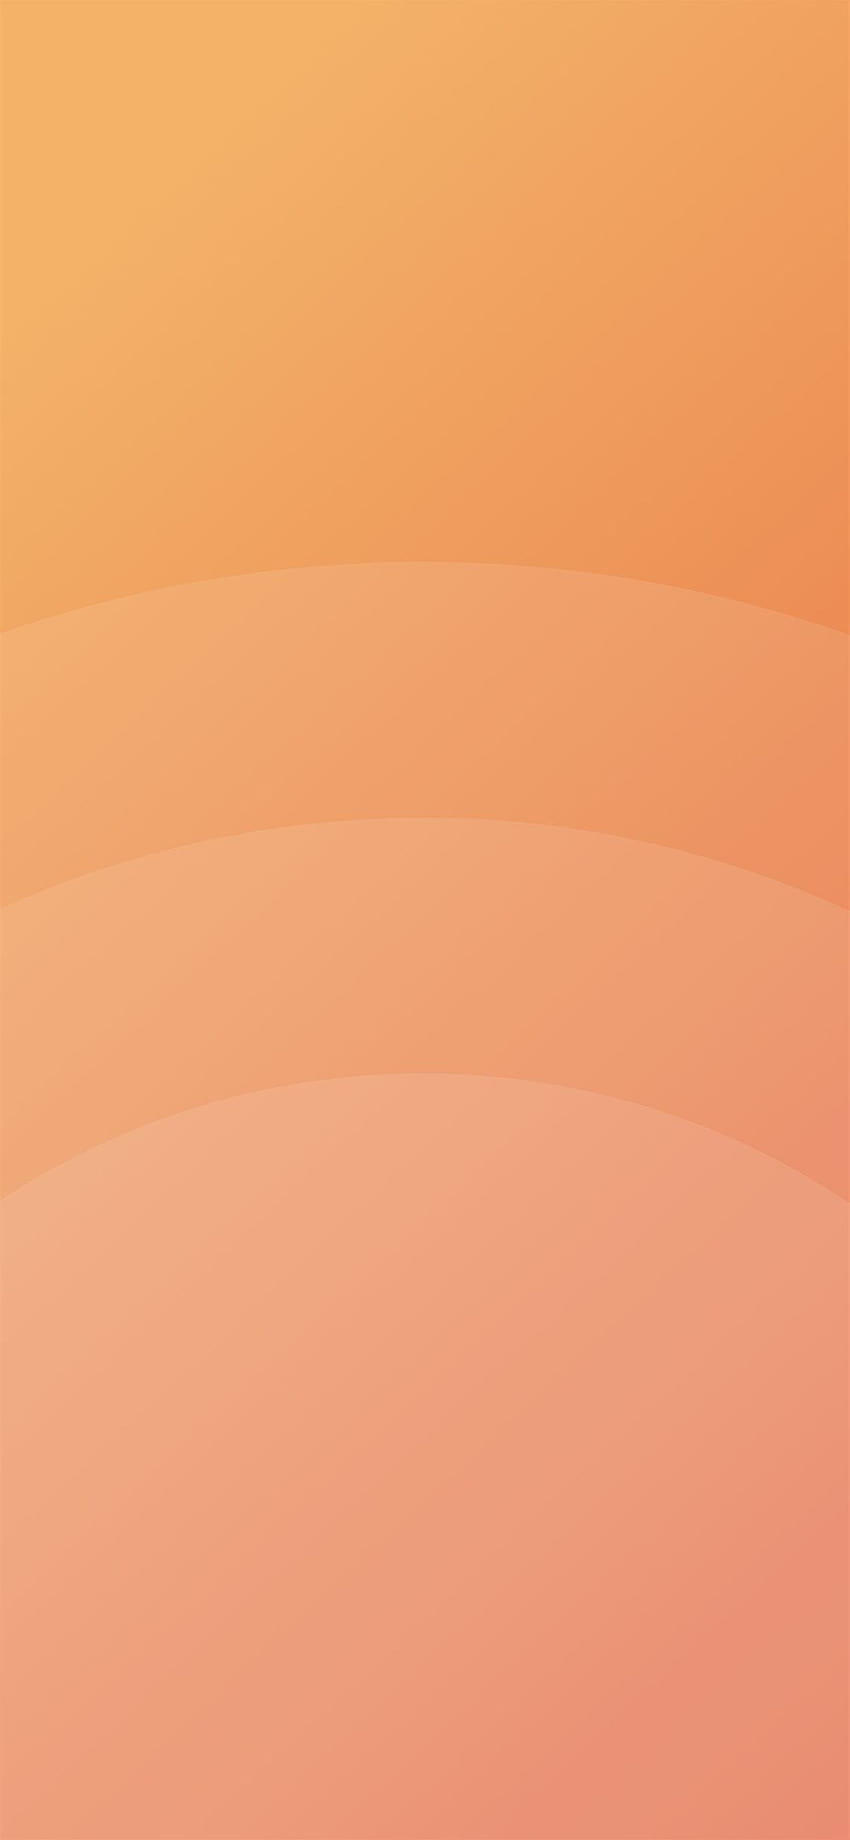 サークル オレンジ色のシンプルなミニマル パターンの背景 iPhone X、オレンジ色のミニマリスト HD電話の壁紙